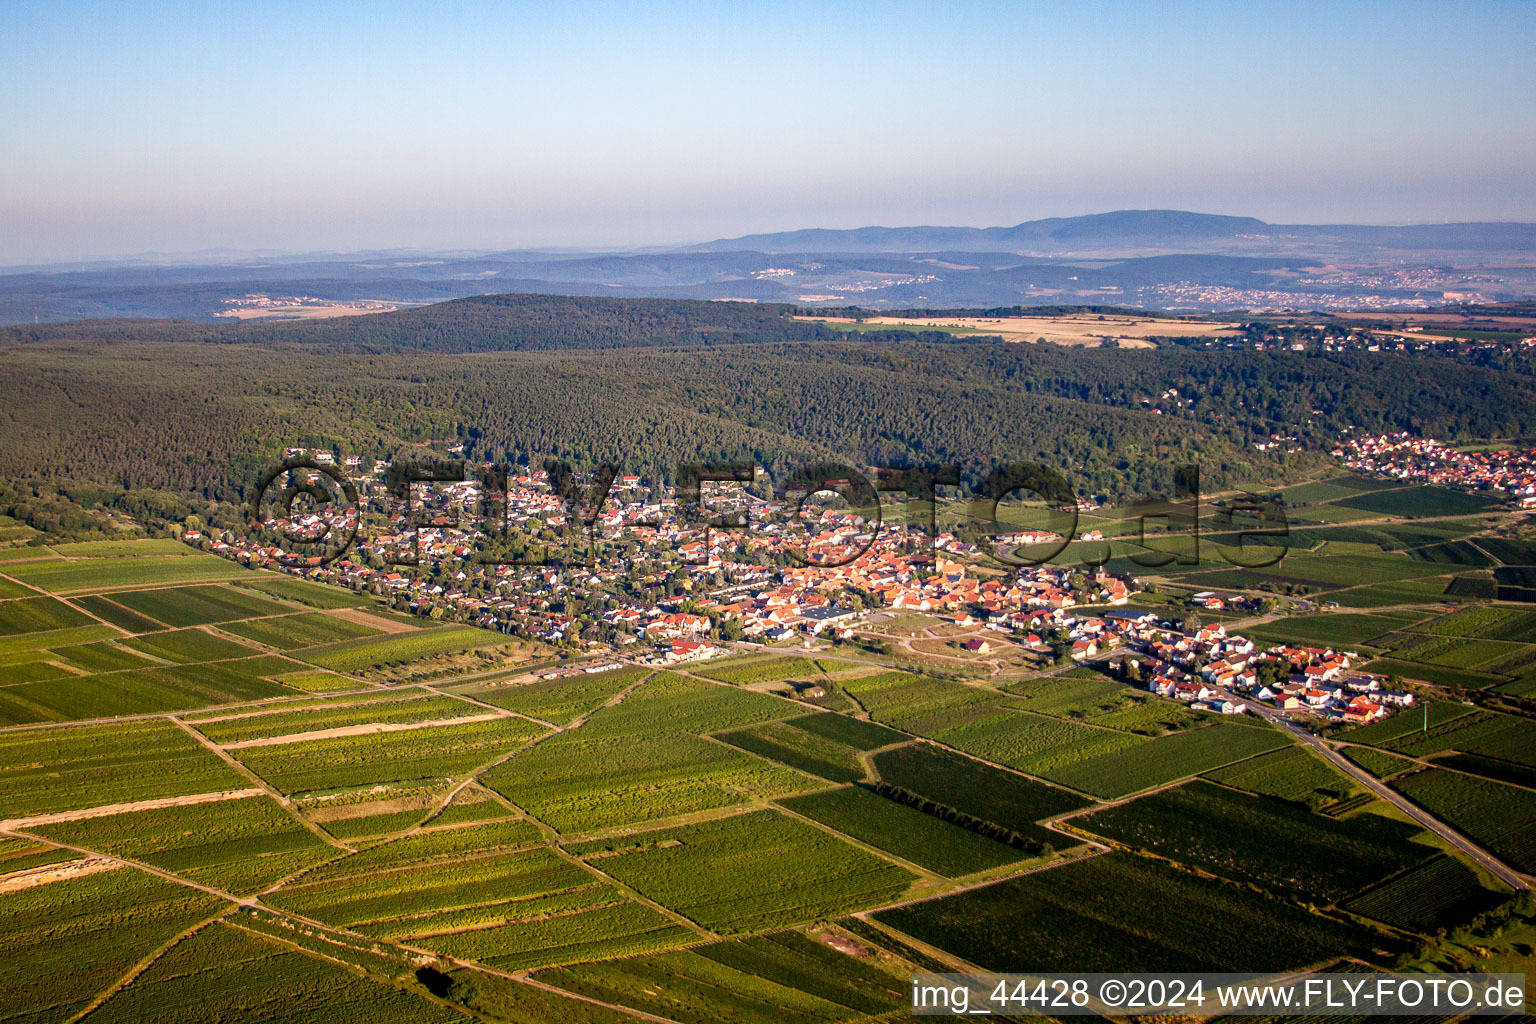 Luftbild von Dorf - Ansicht am Rande von Weinbergen am Haardtrand in Weisenheim am Berg im Bundesland Rheinland-Pfalz, Deutschland